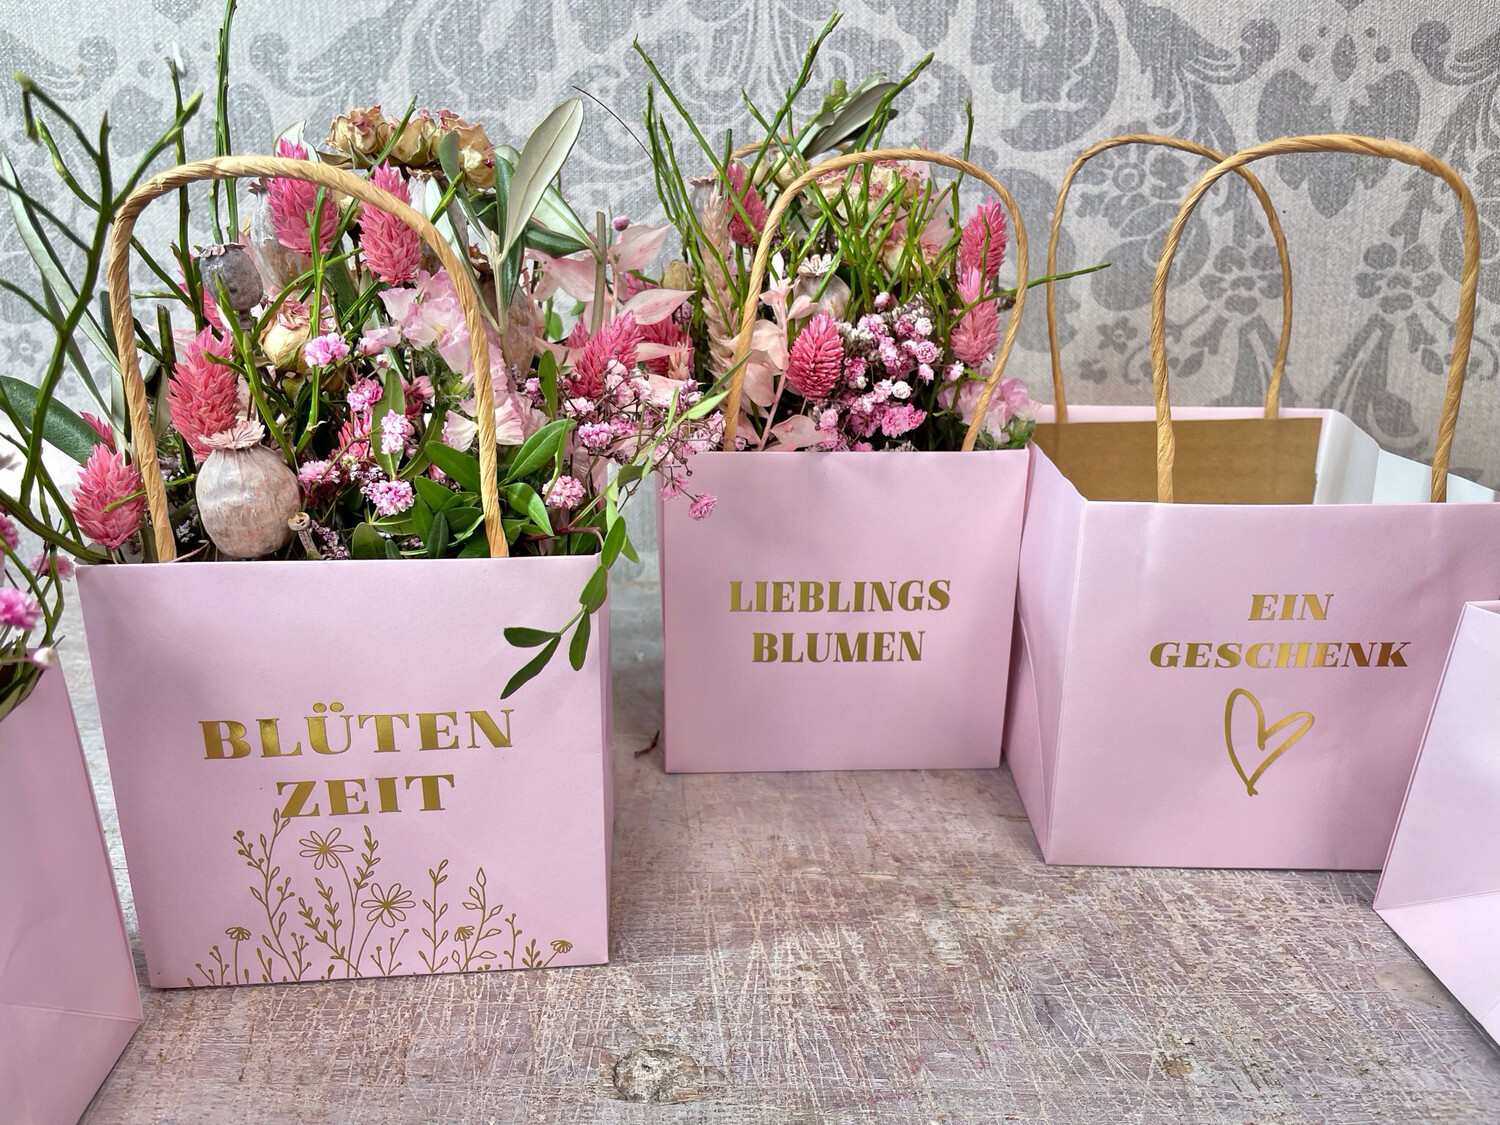 Frühlingsgesteck aus rosa Trockenblumen in einer Tasche Blumiges Trockenblumengesteck und personalisierte Geschenkidee für Ostern und Muttertag.